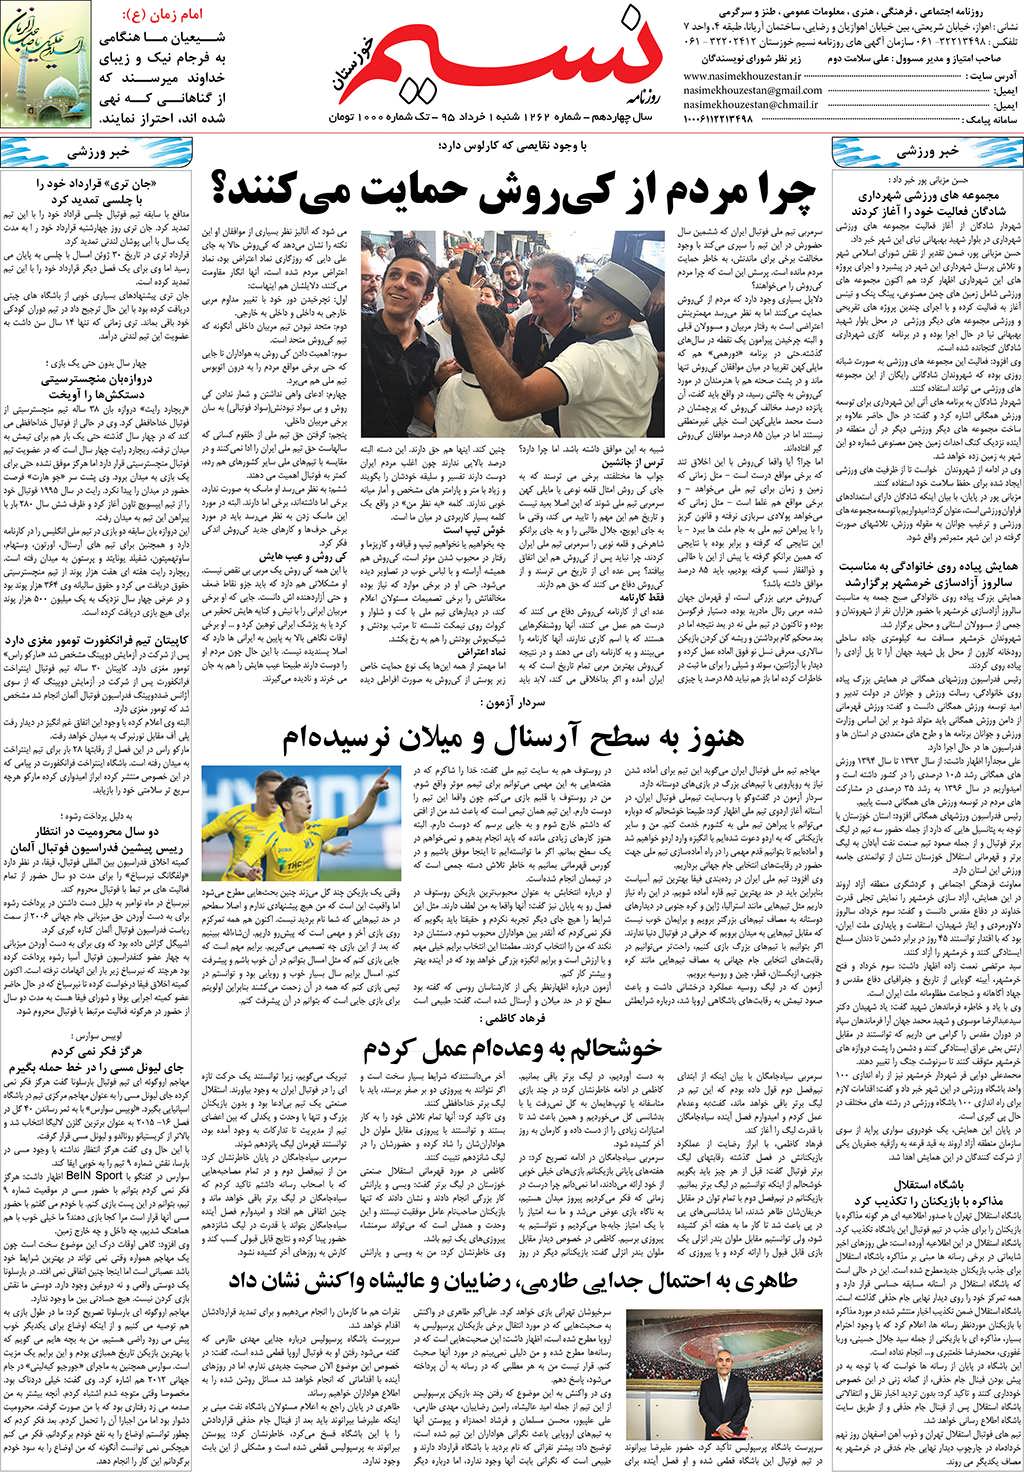 صفحه آخر روزنامه نسیم شماره 1262